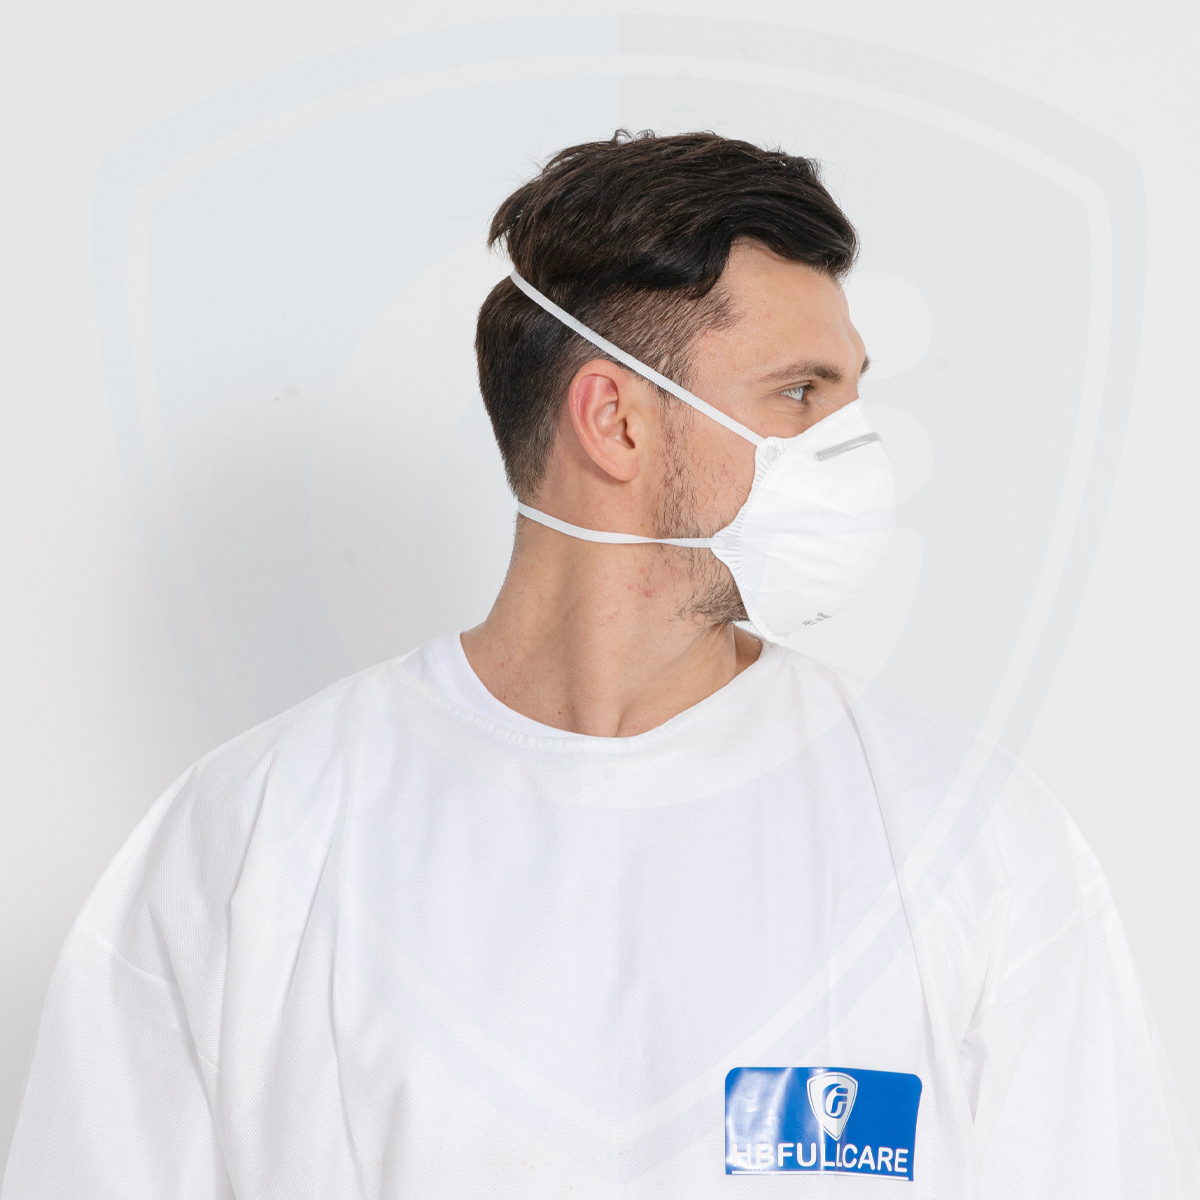 Vente en gros jetables de haute qualité En149 FFP1 Masque respiratoire filtré